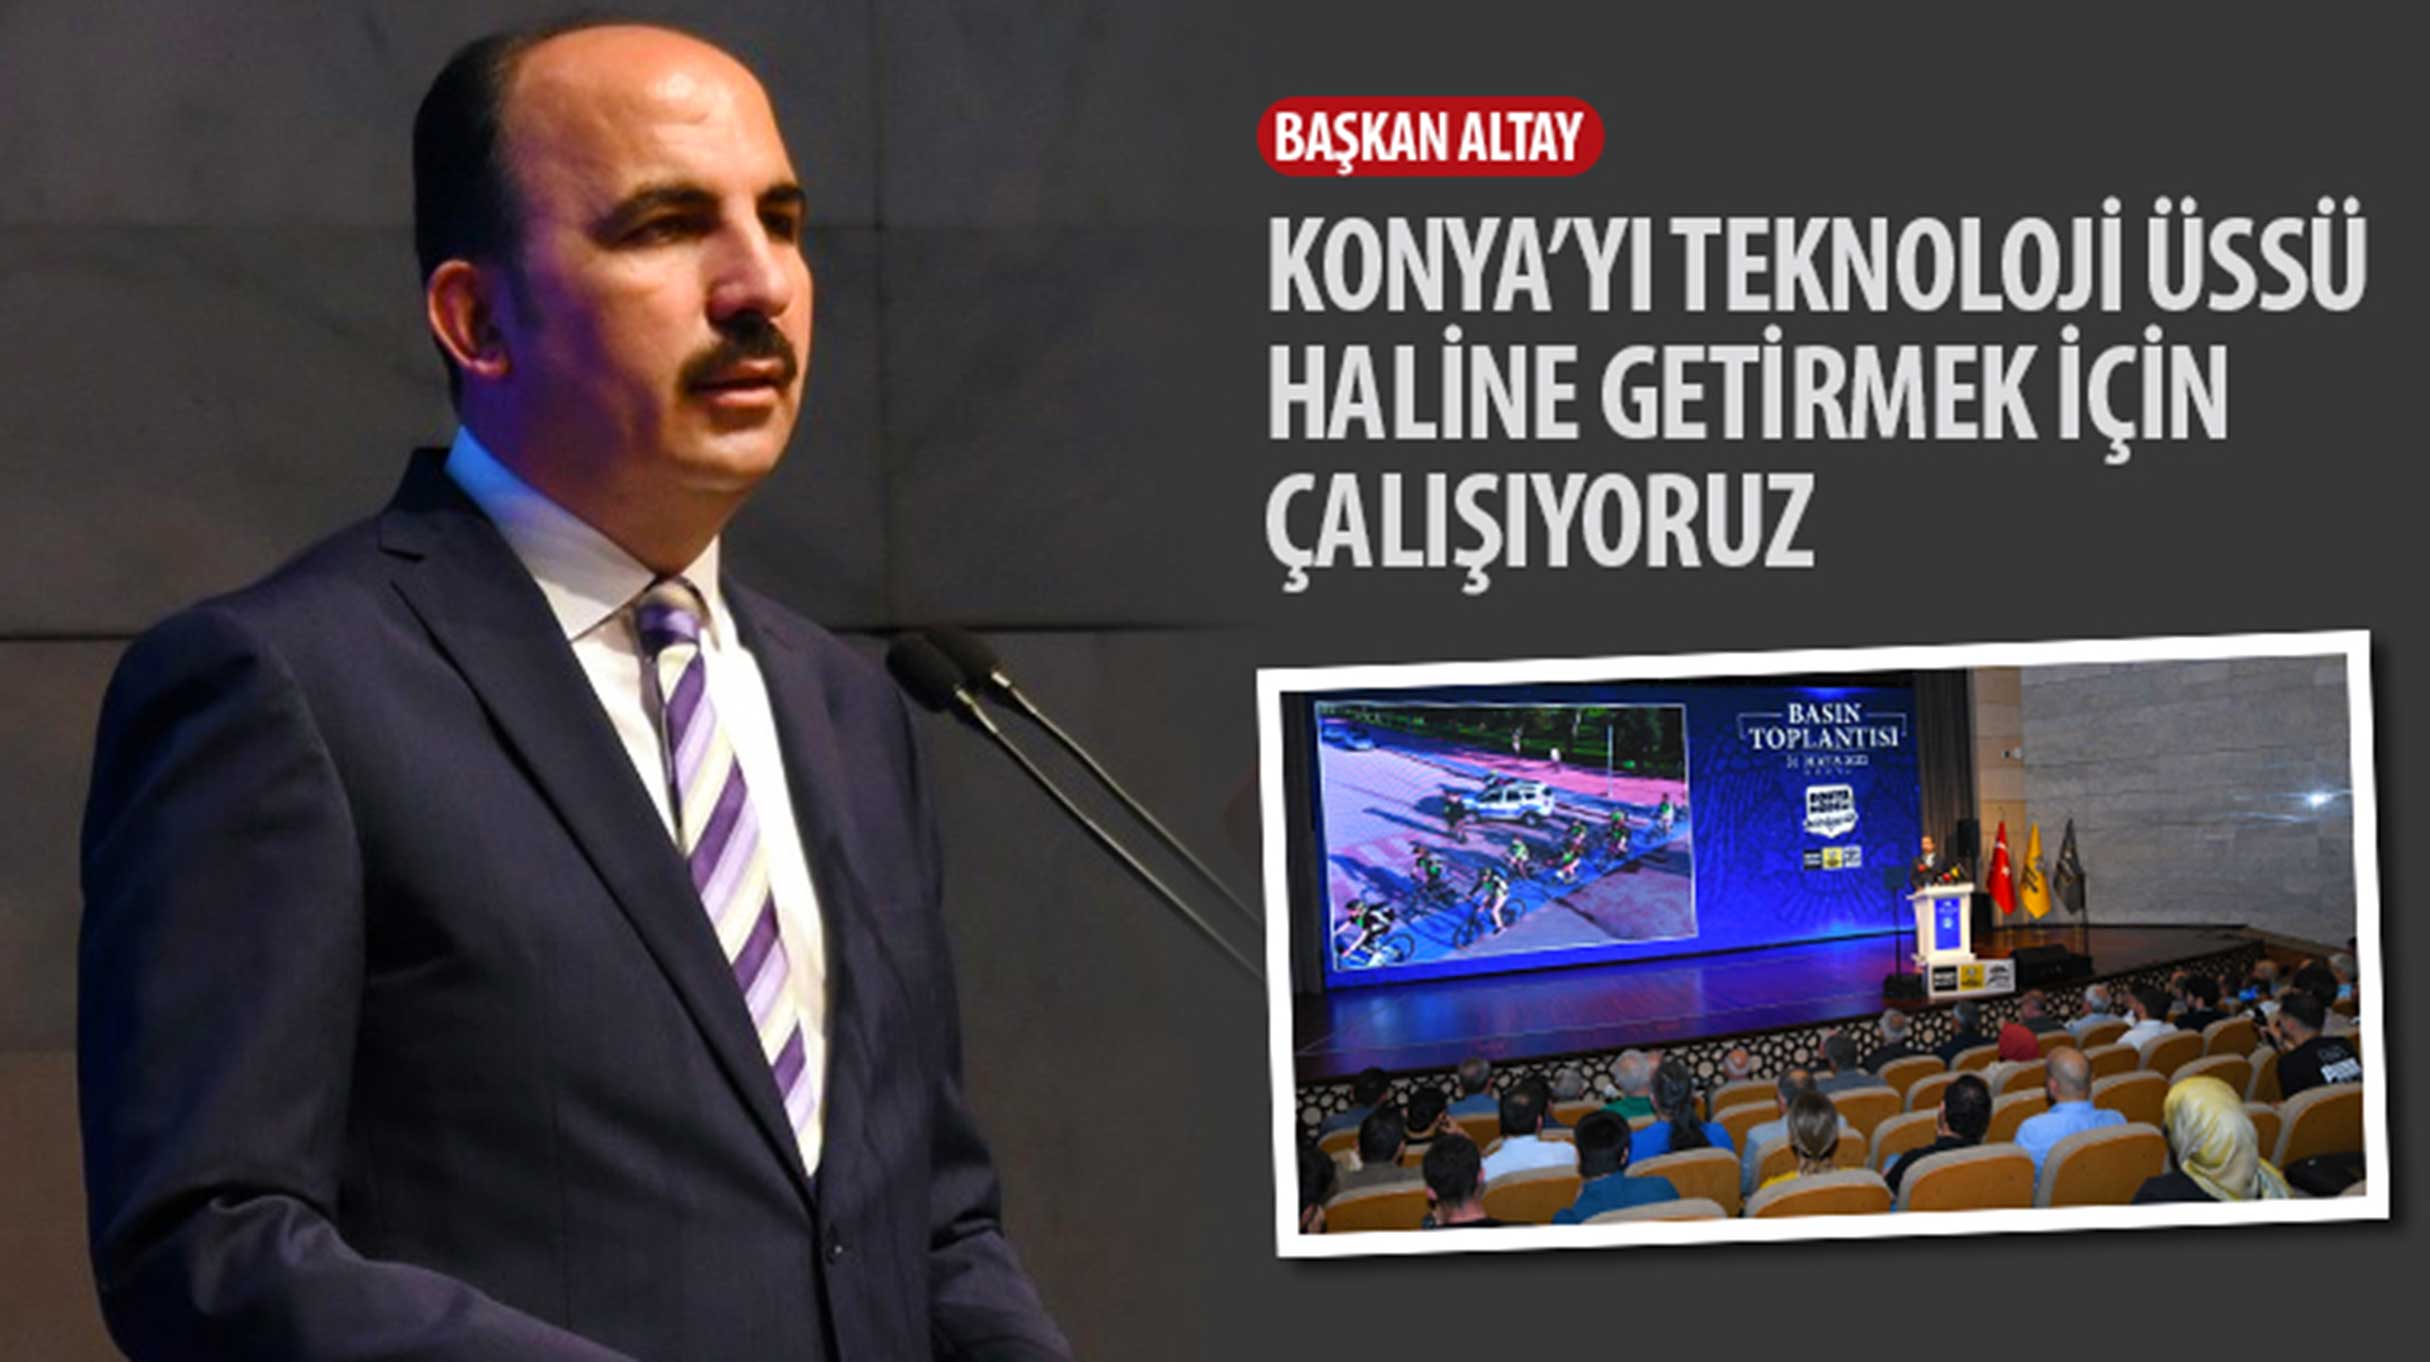 Başkan Altay: “Konya’yı Teknoloji Üssü Haline Getirmek İçin Çalışıyoruz.”